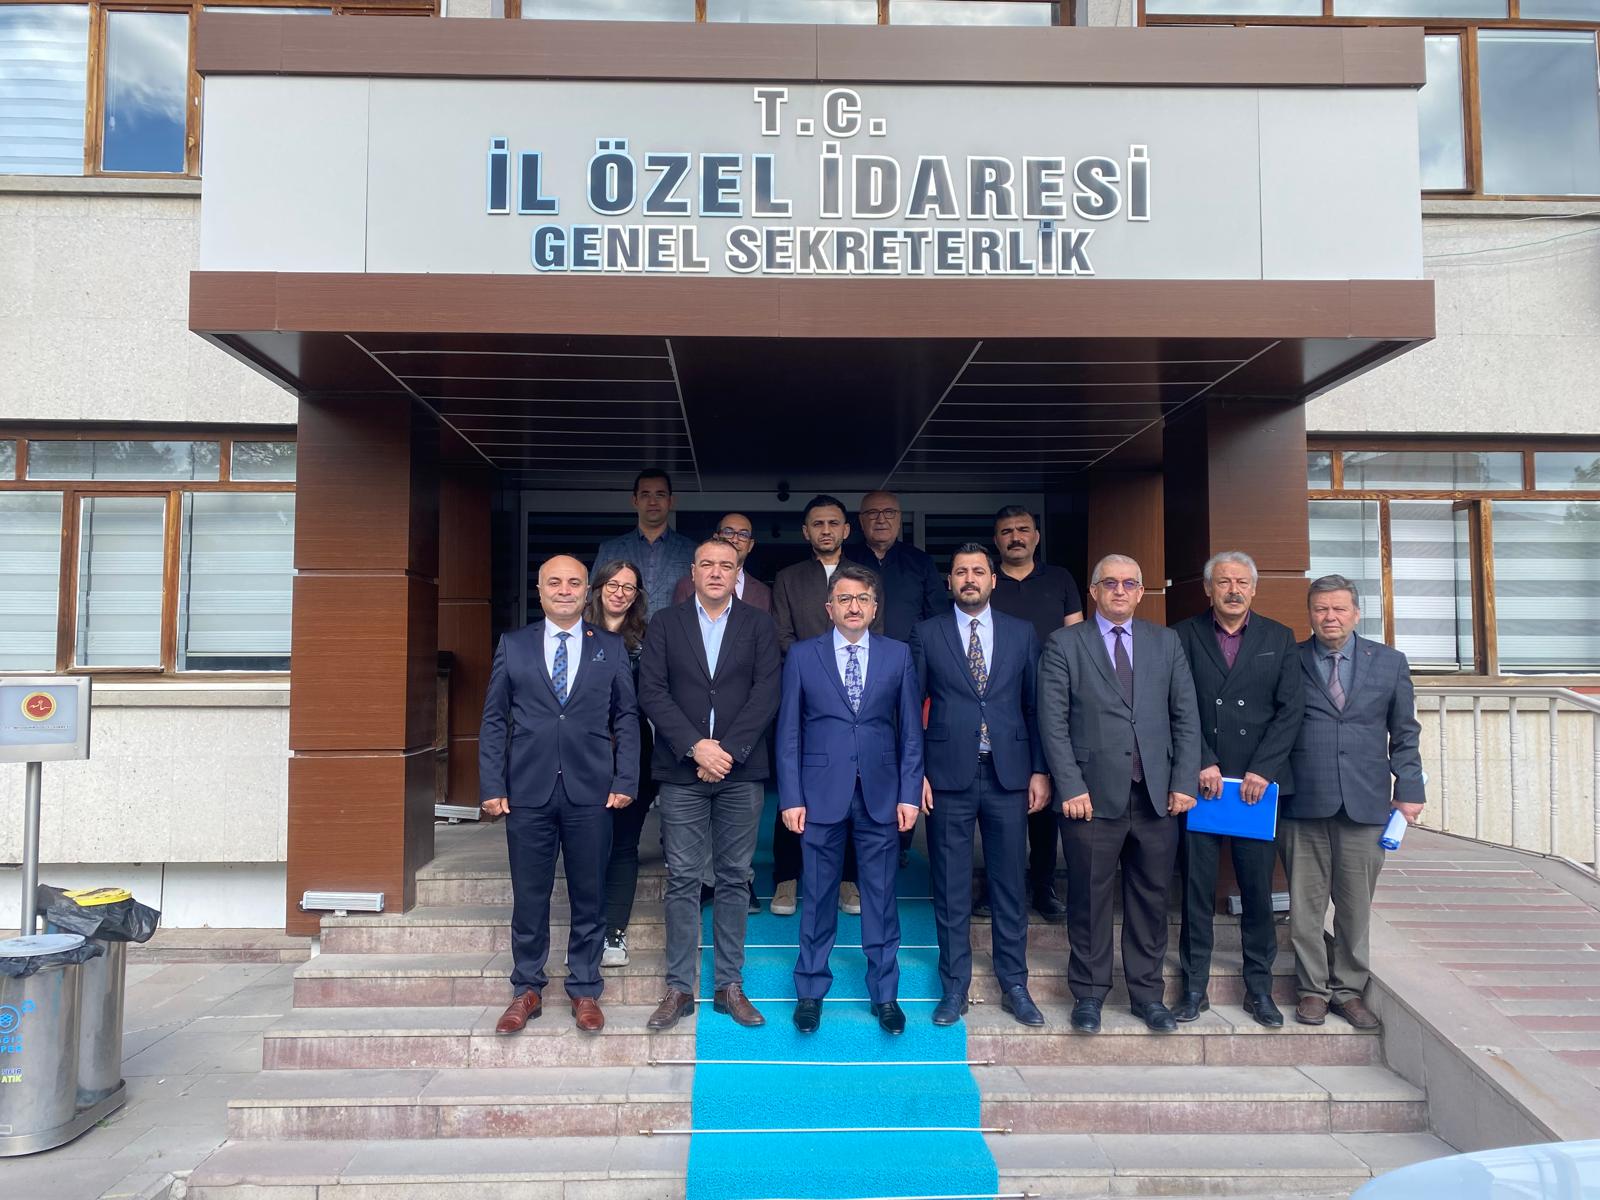 Nevşehir İl Özel İdaresinde Yeni Genel Sekreter Göreve Başladı